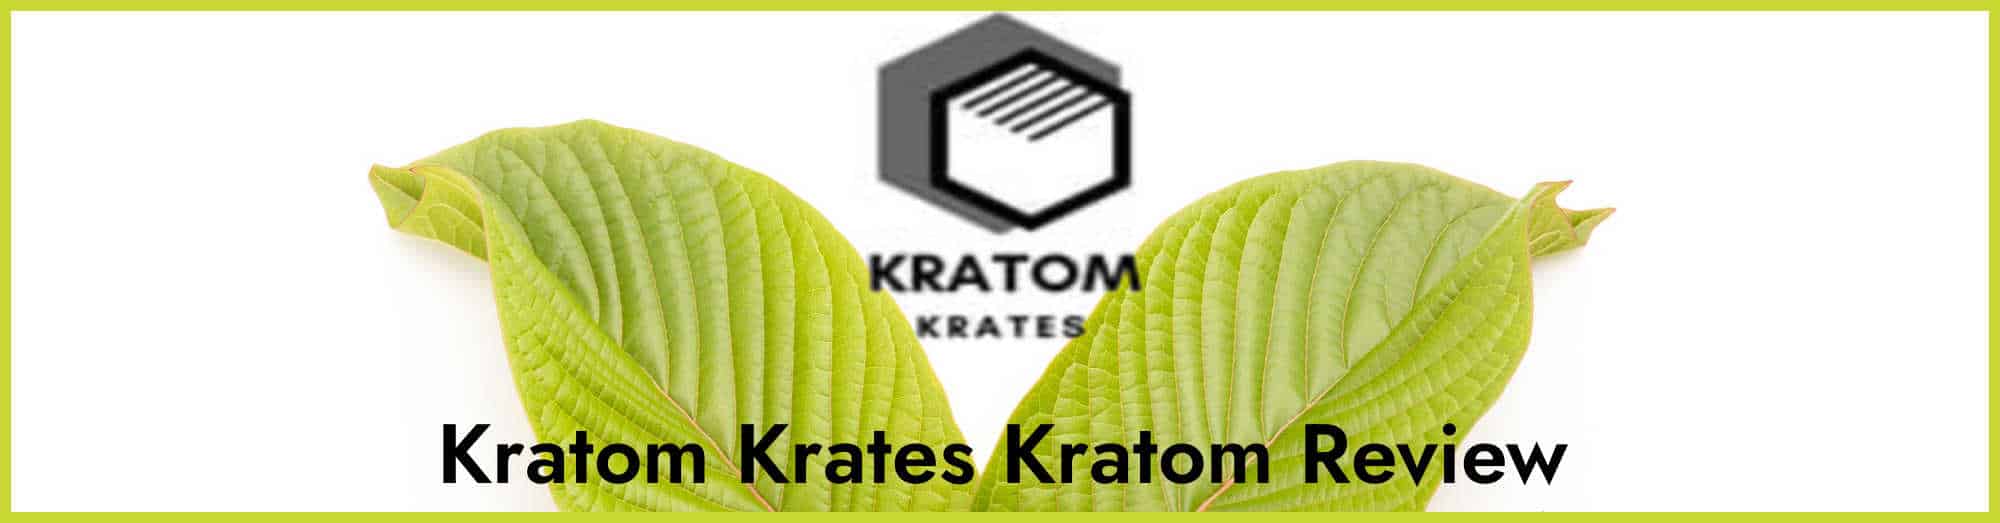 image of kratom krates